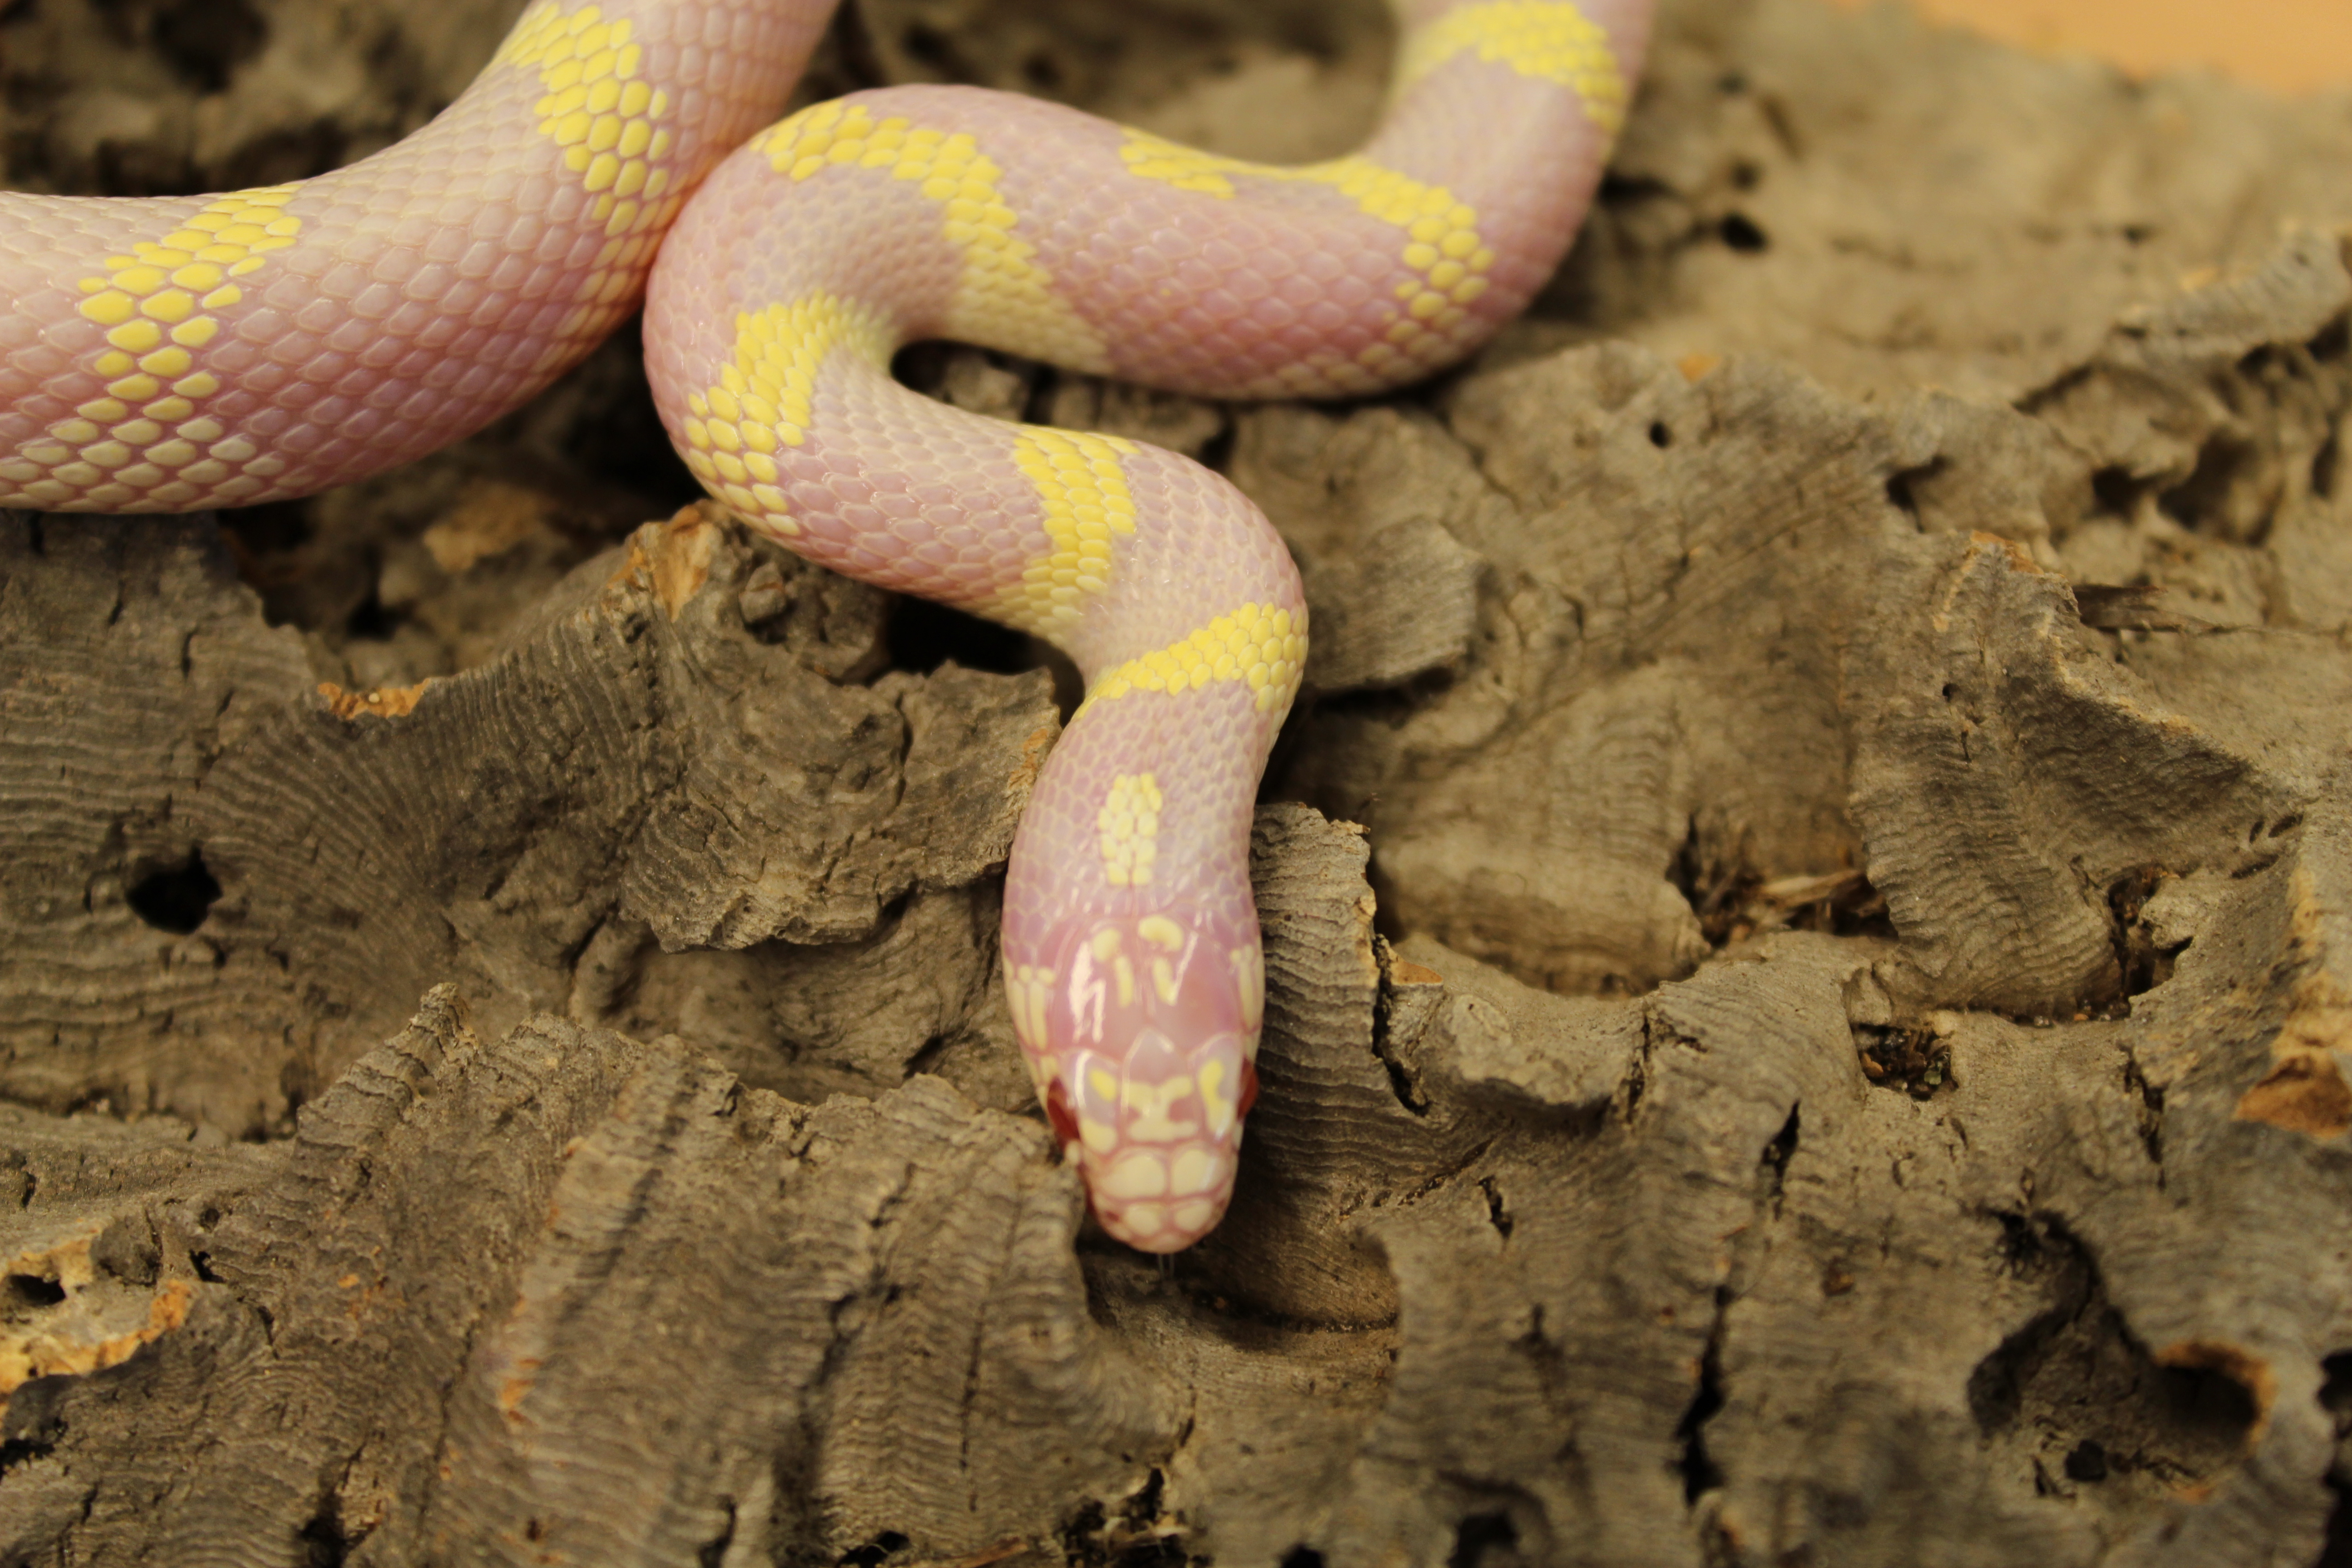 kingsnake com photo gallery snakes albino snake.